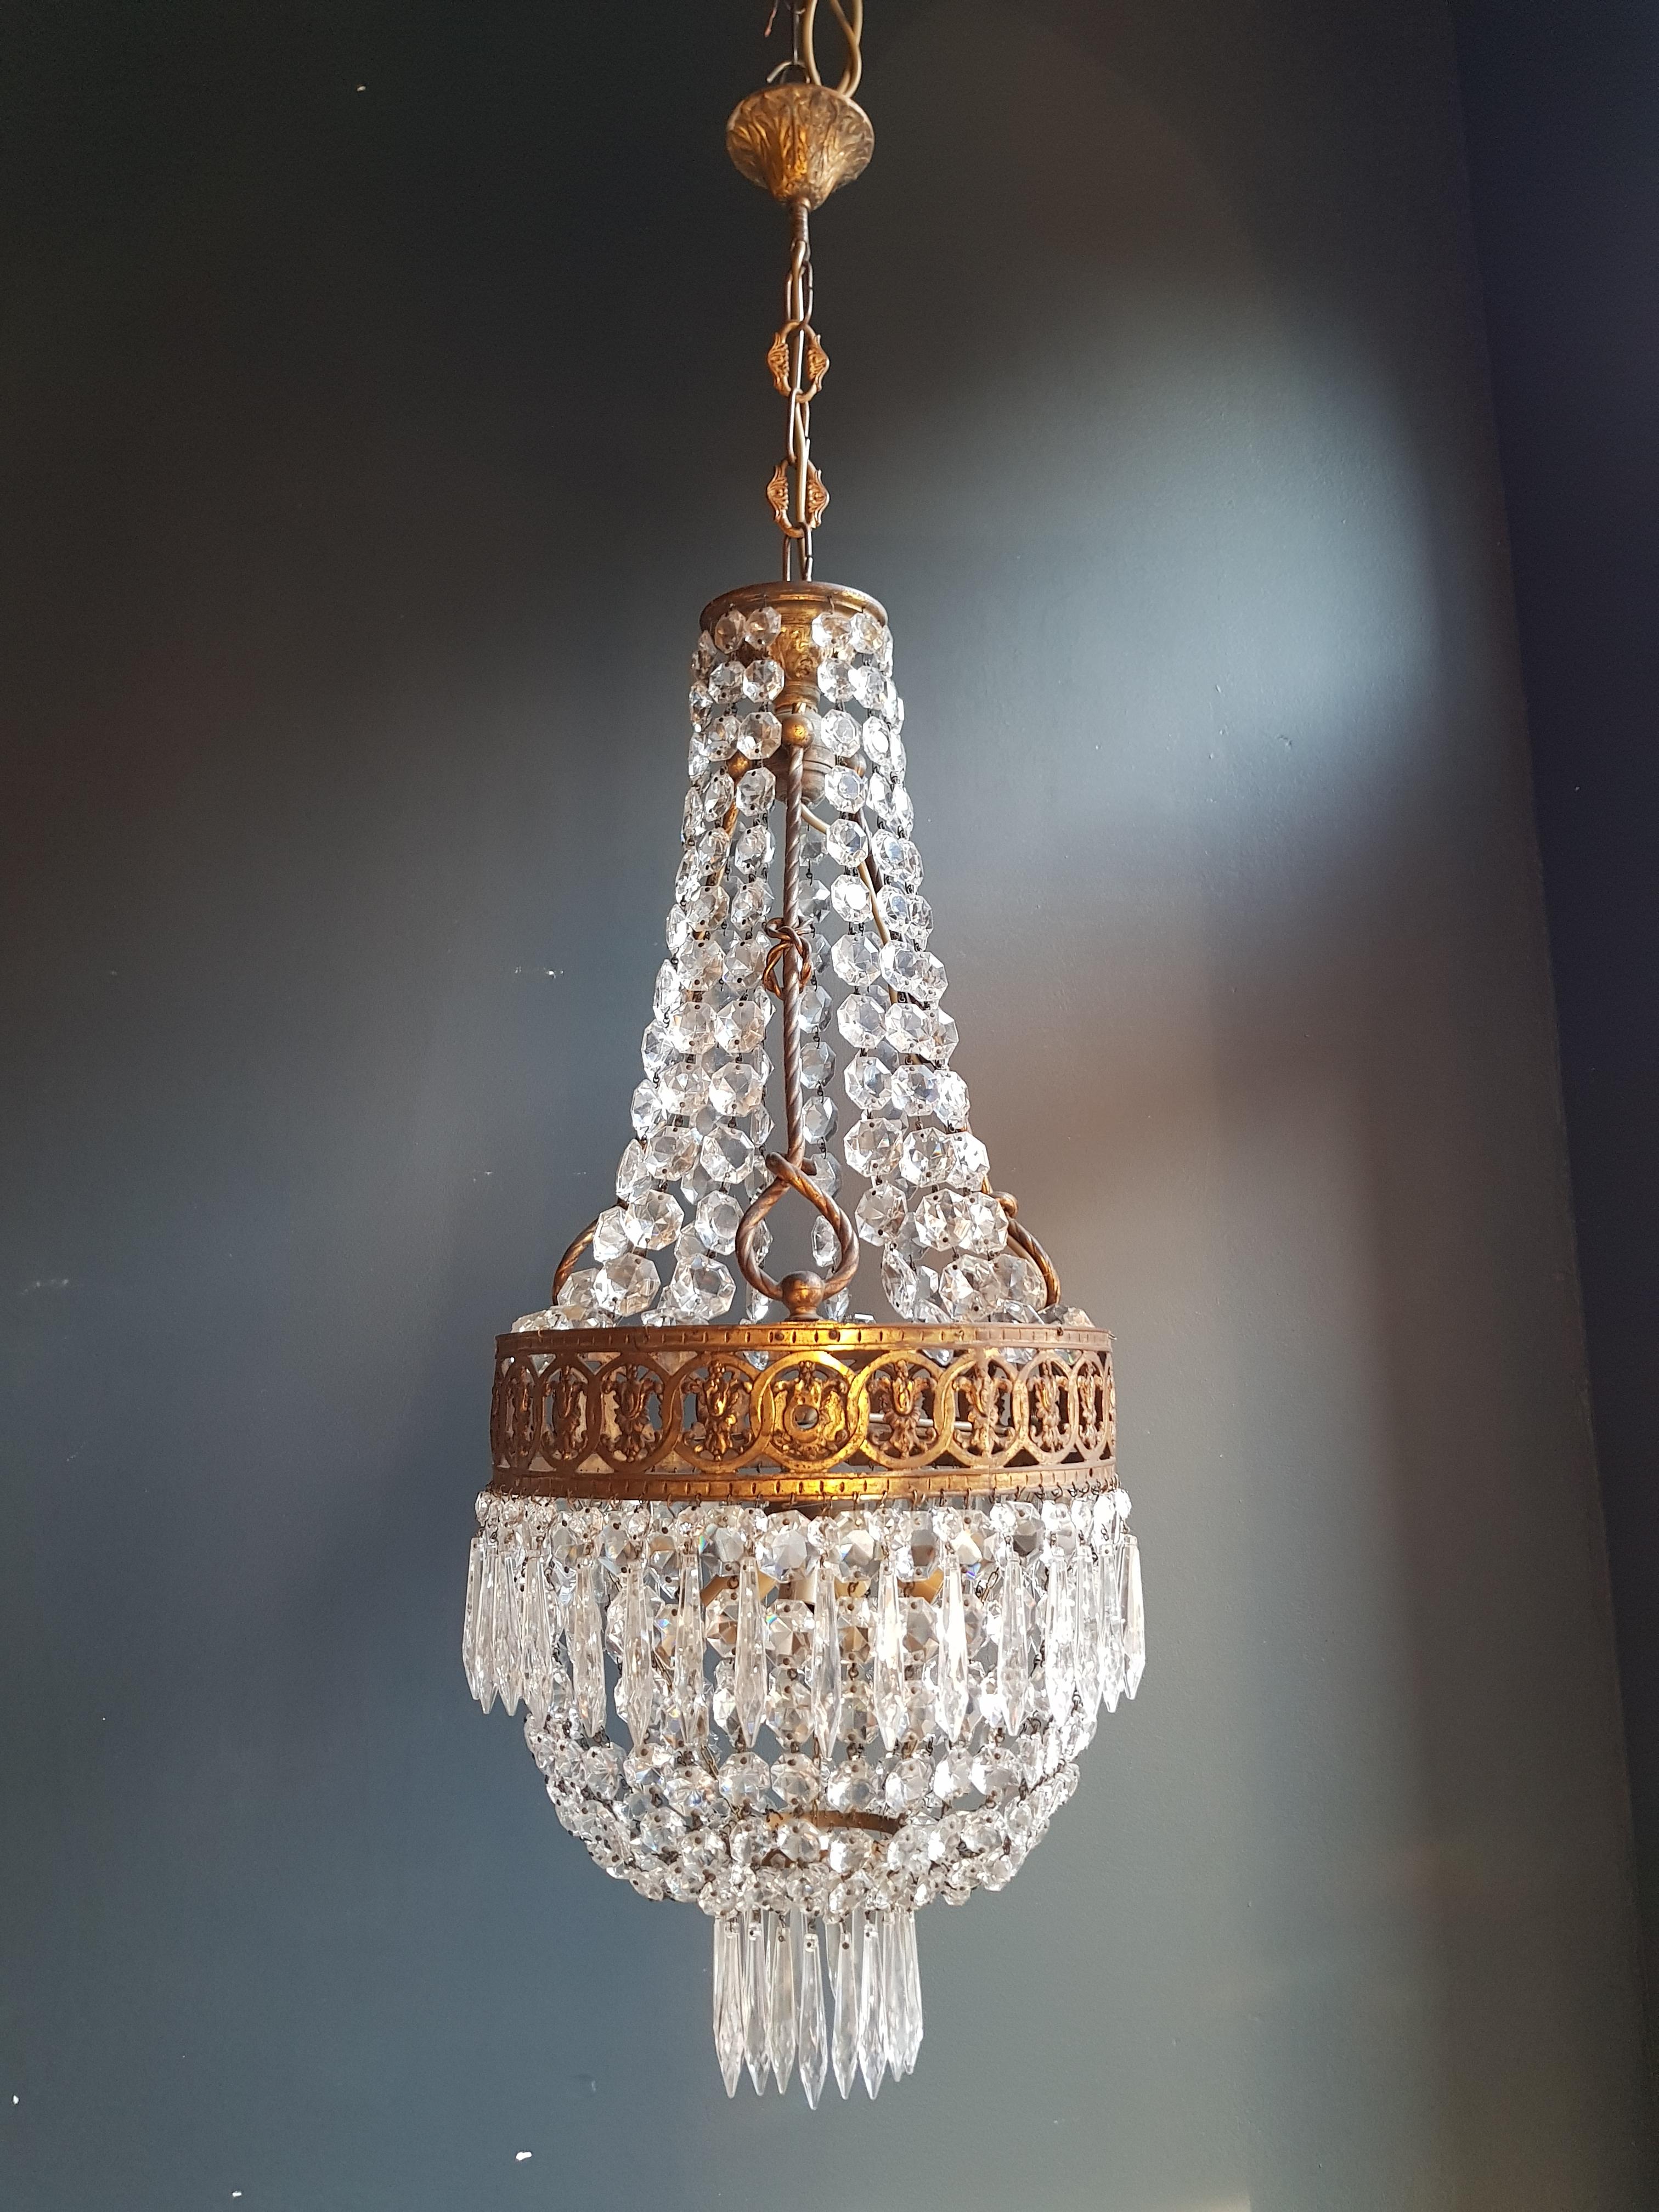 Mid-20th Century Basket Chandelier Brass Empire Crystal Lustre Ceiling Antique Art Nouveau